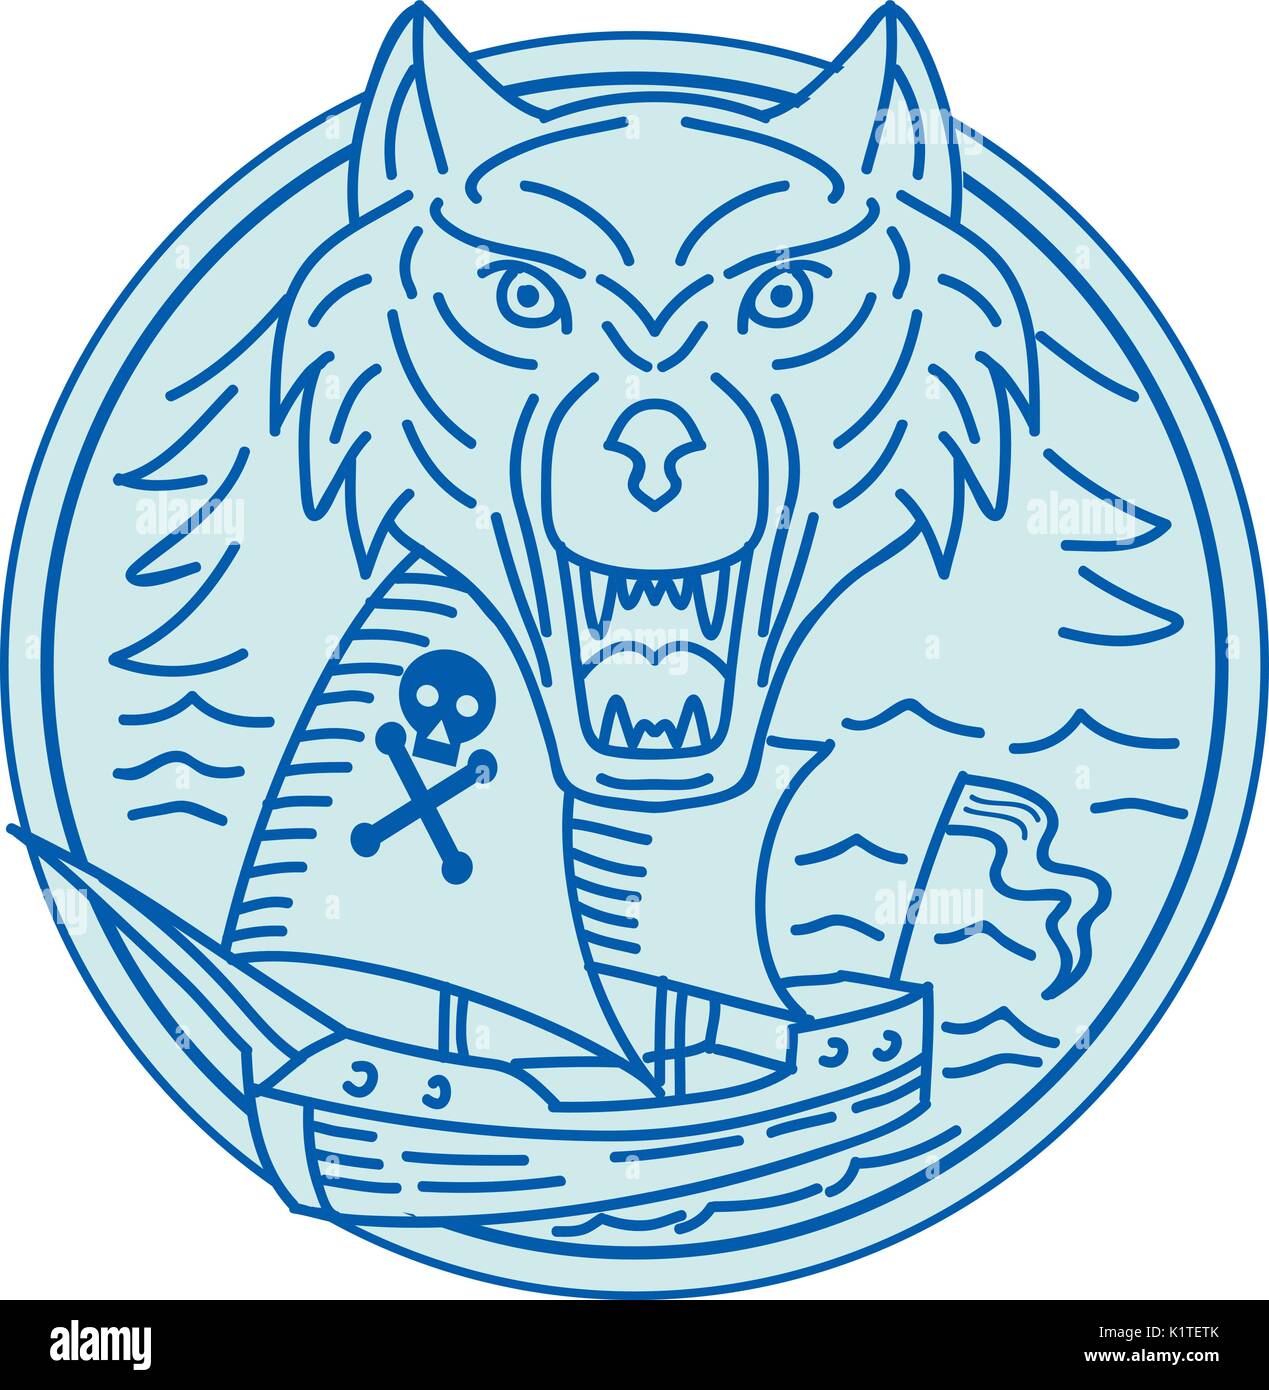 Style ligne mono illustration d'un navire pirate et seawolf vue de l'avant ensemble à l'intérieur du cercle. Illustration de Vecteur